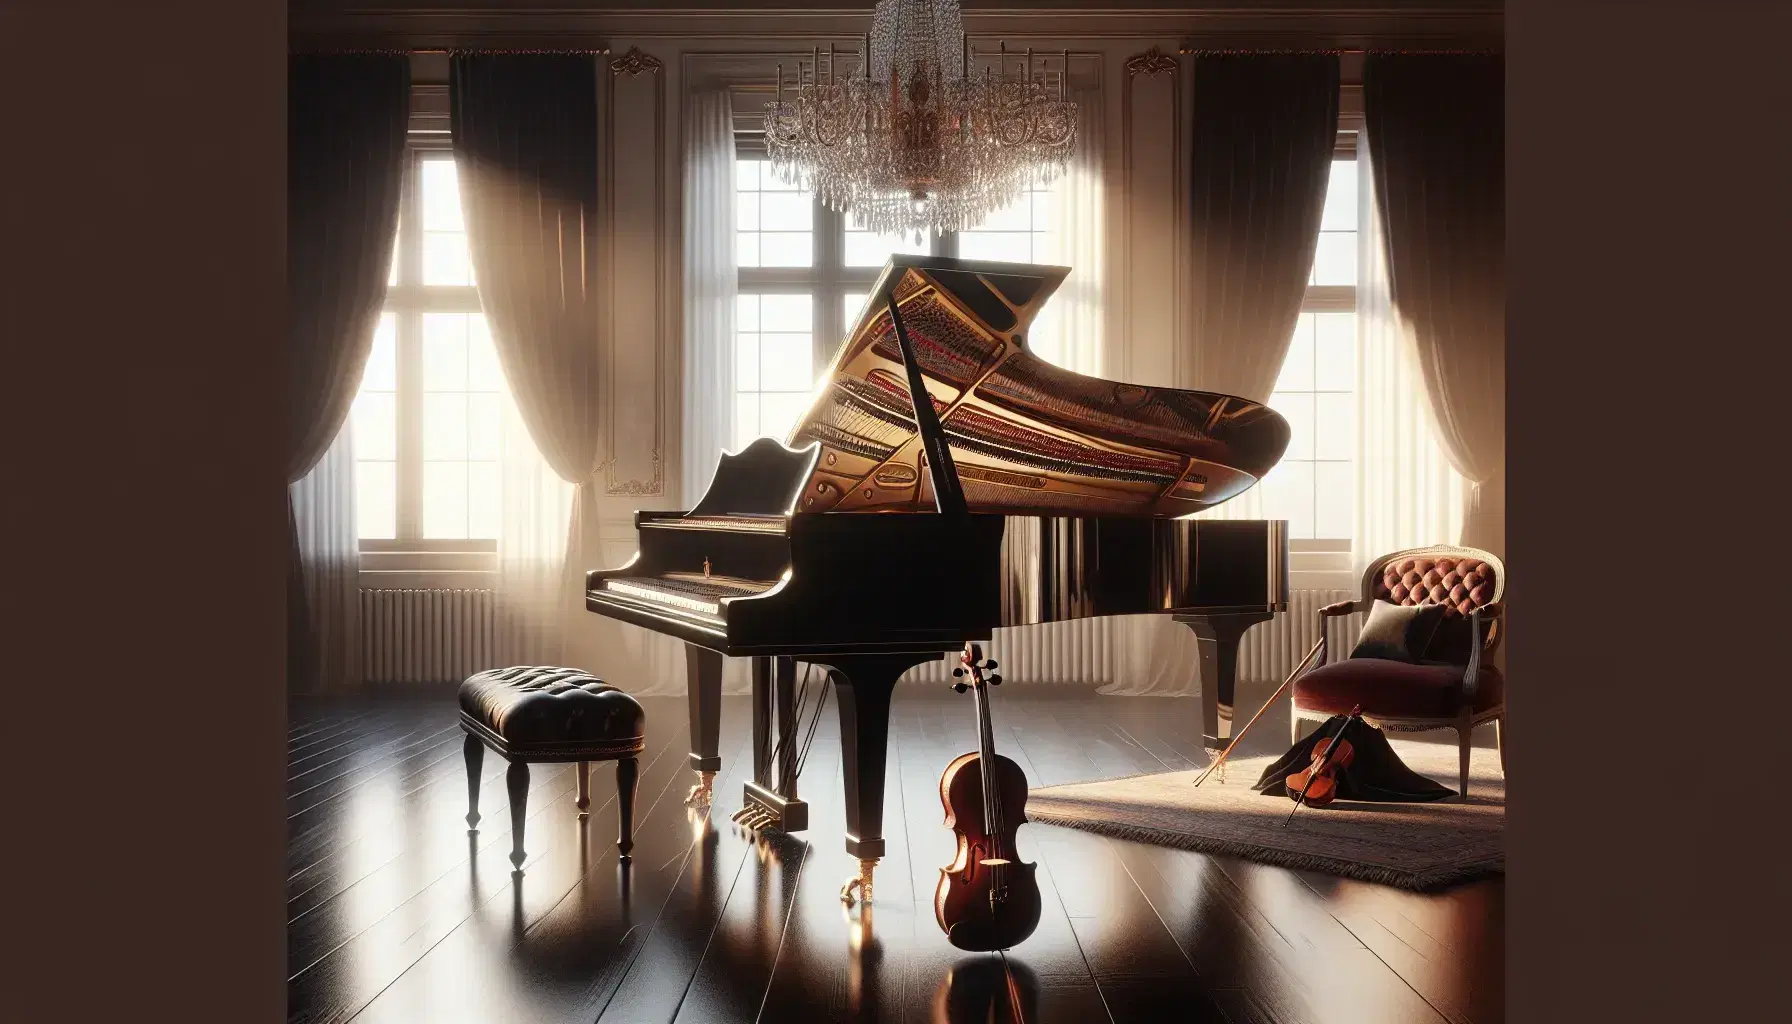 Pianoforte a coda nero lucido con coperchio aperto, violino su sedia in velluto rosso e spartito visibile, in una stanza illuminata naturalmente.